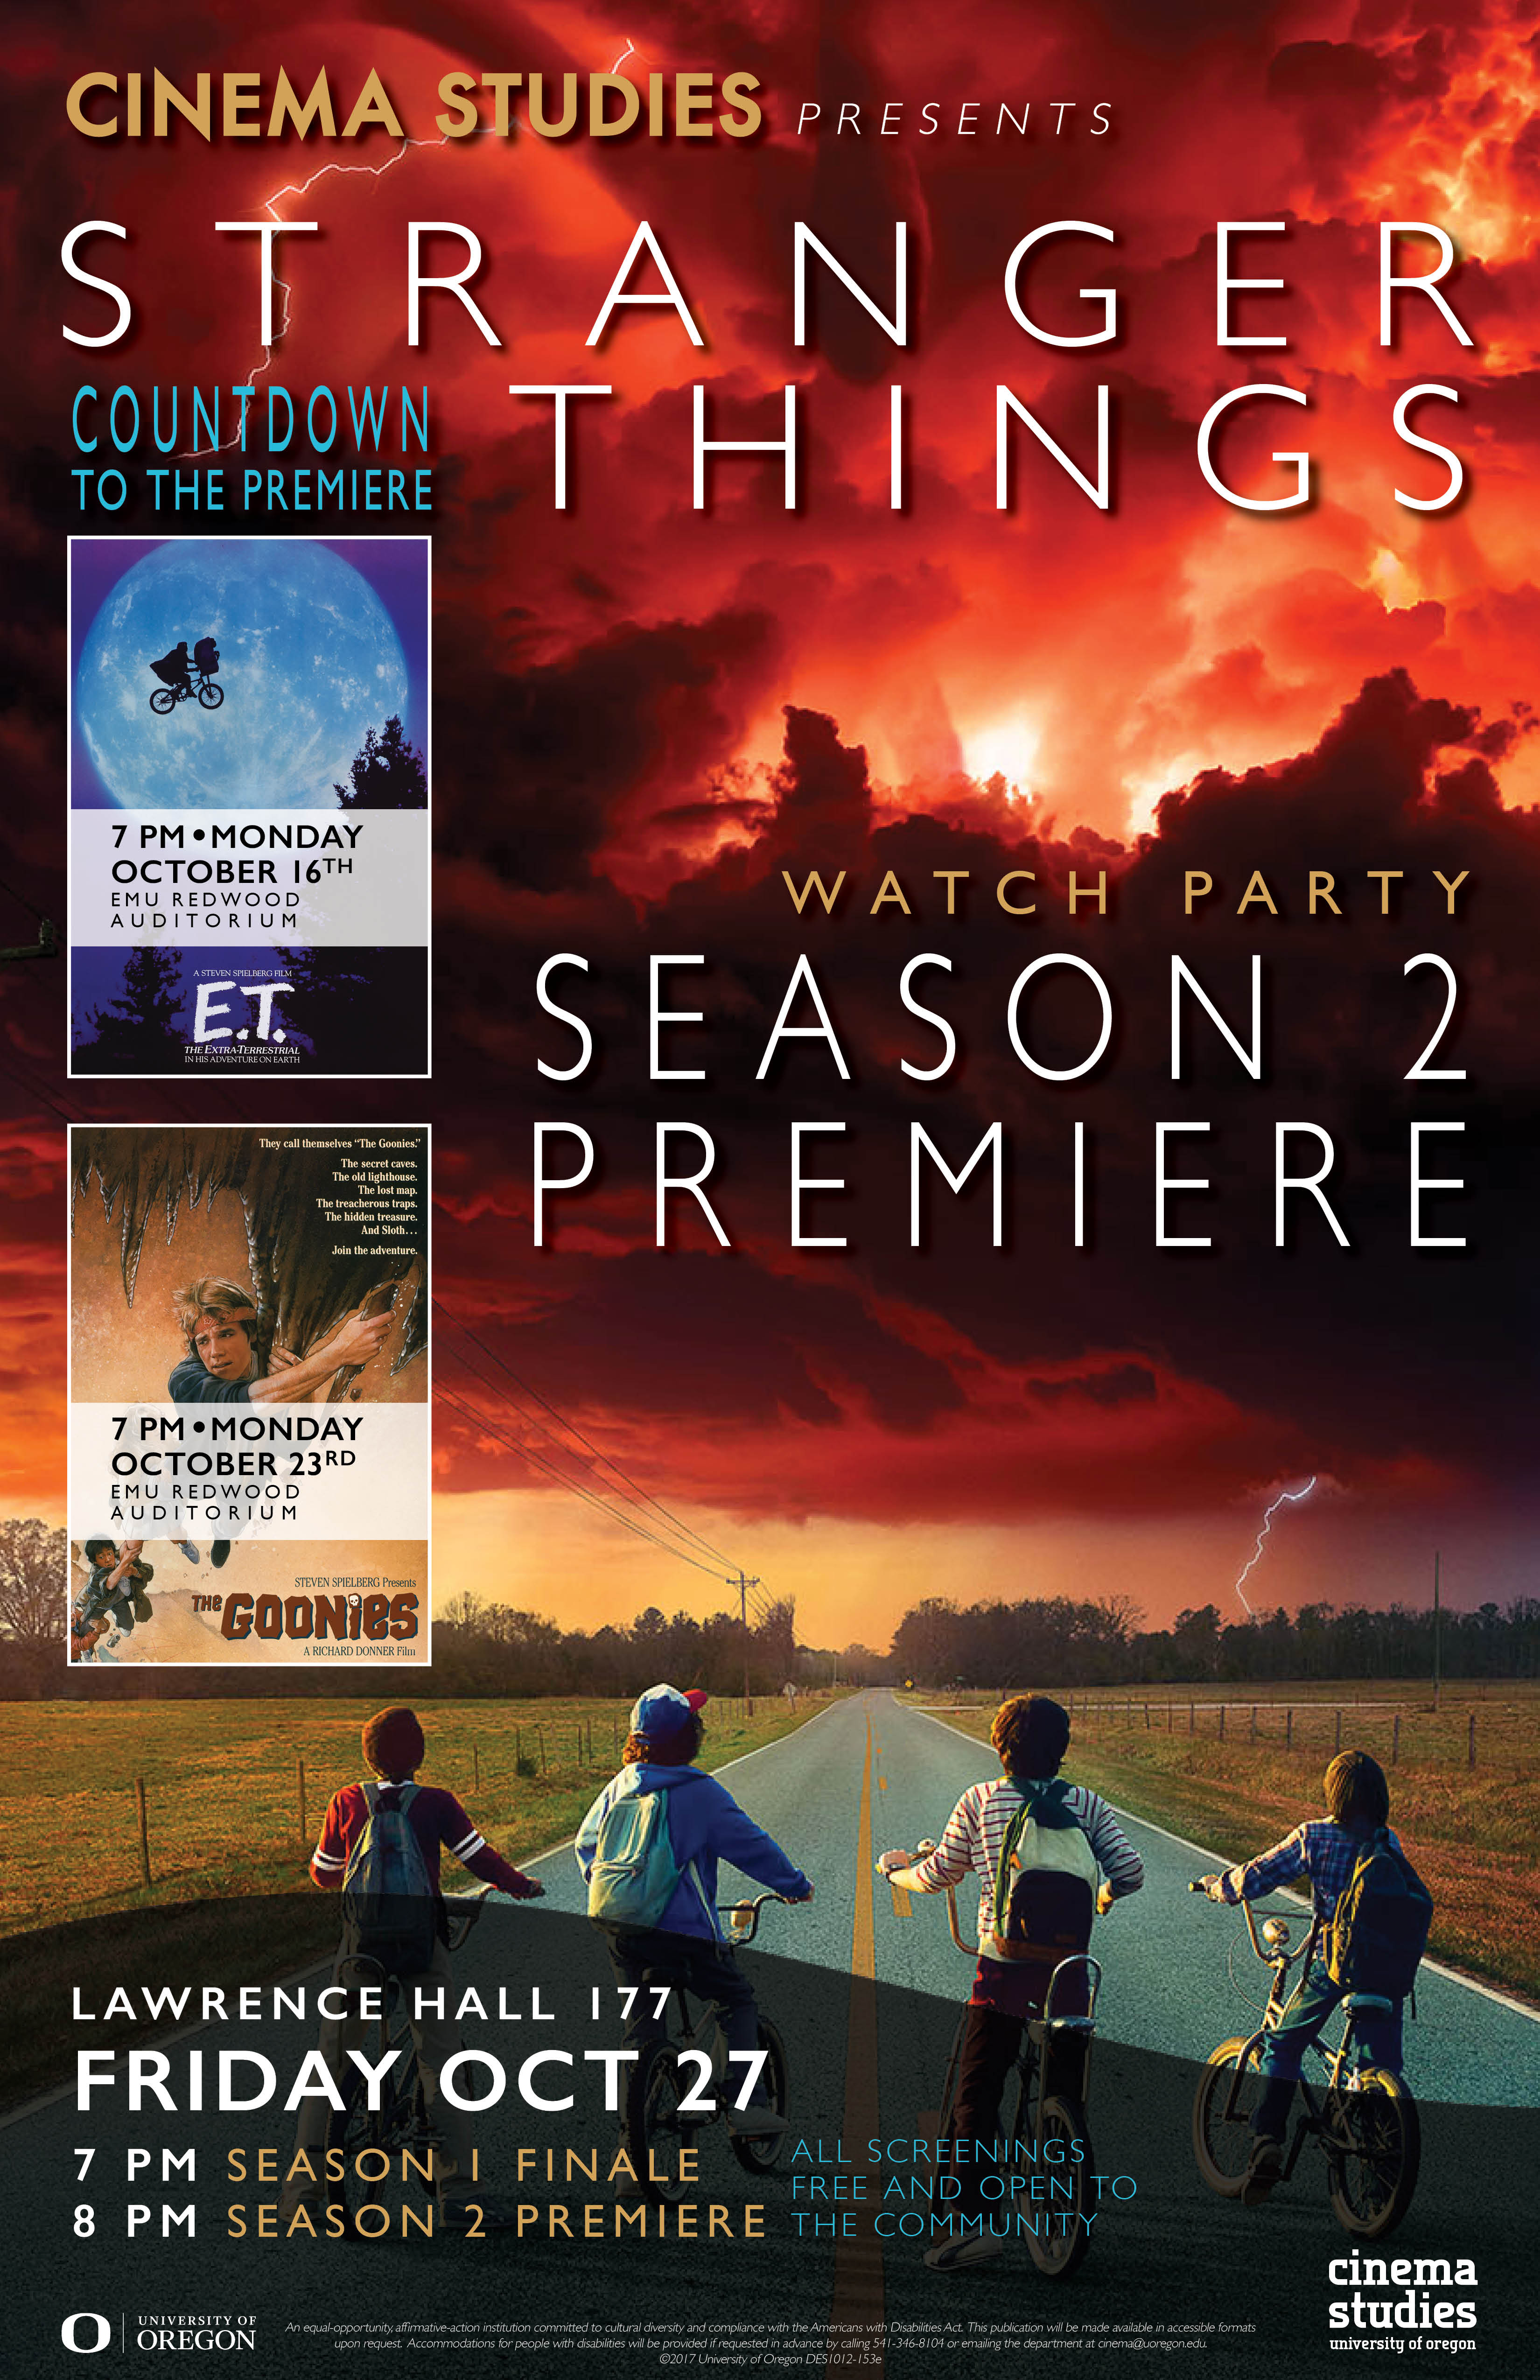 Poster for screening of "Stranger Things"